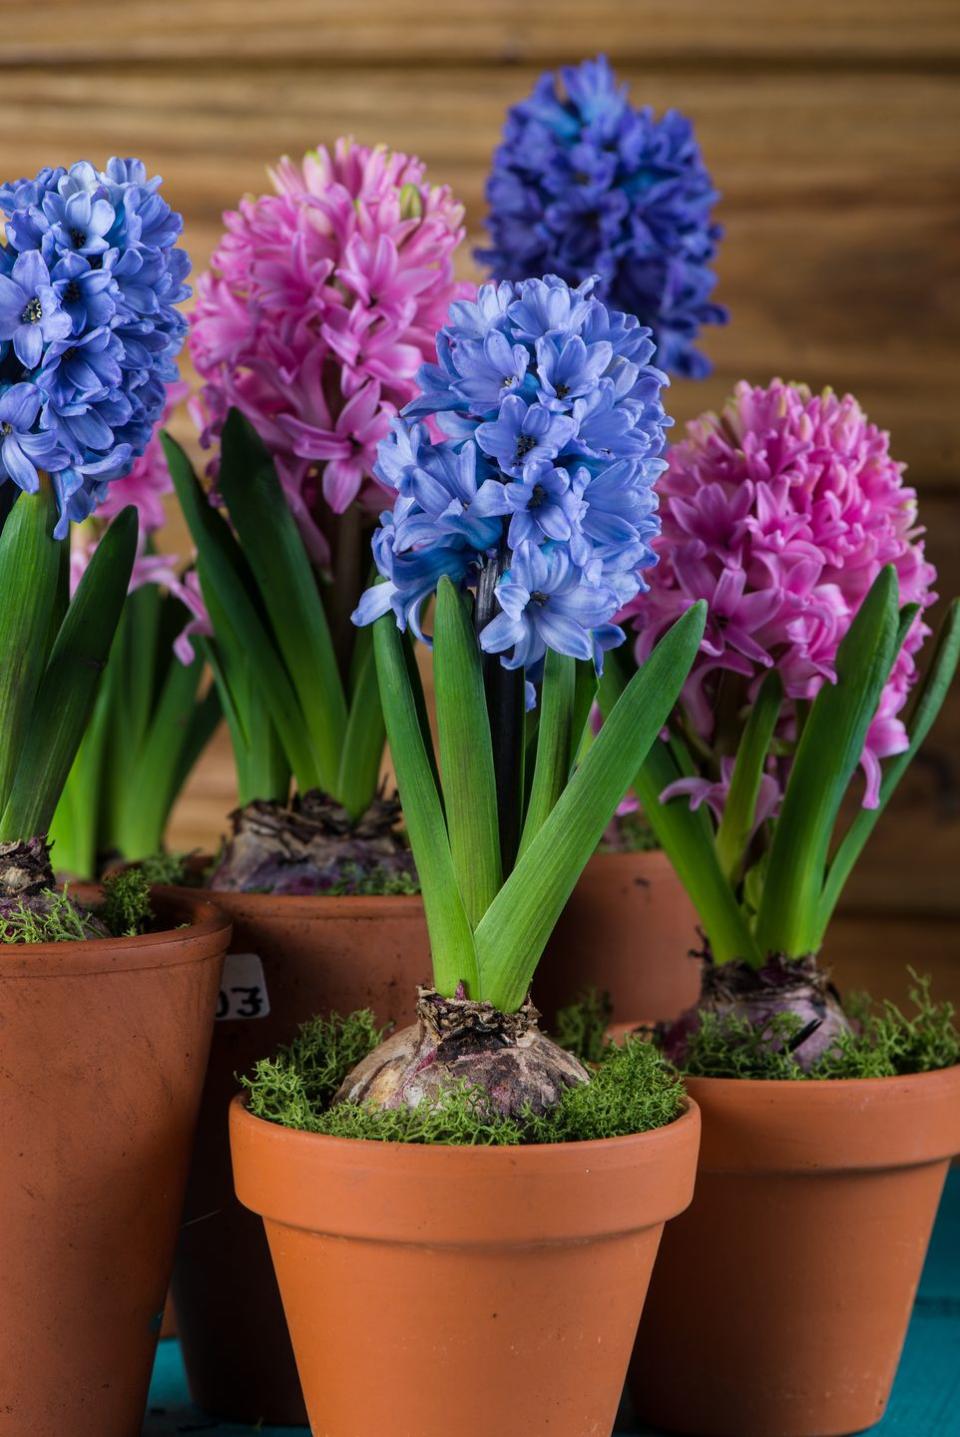 9) Hyacinth